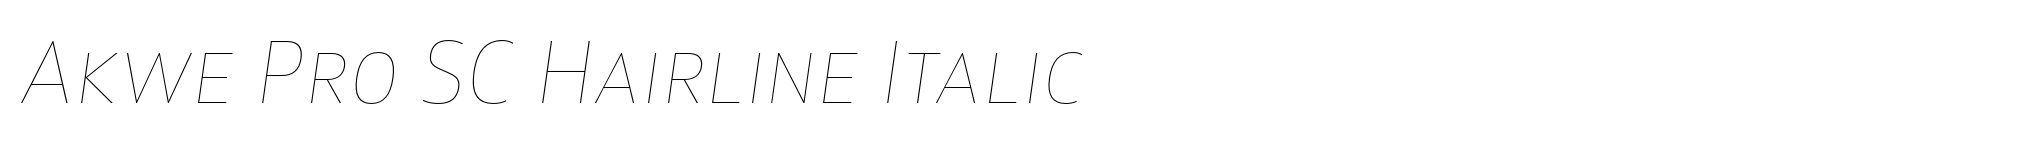 Akwe Pro SC Hairline Italic image